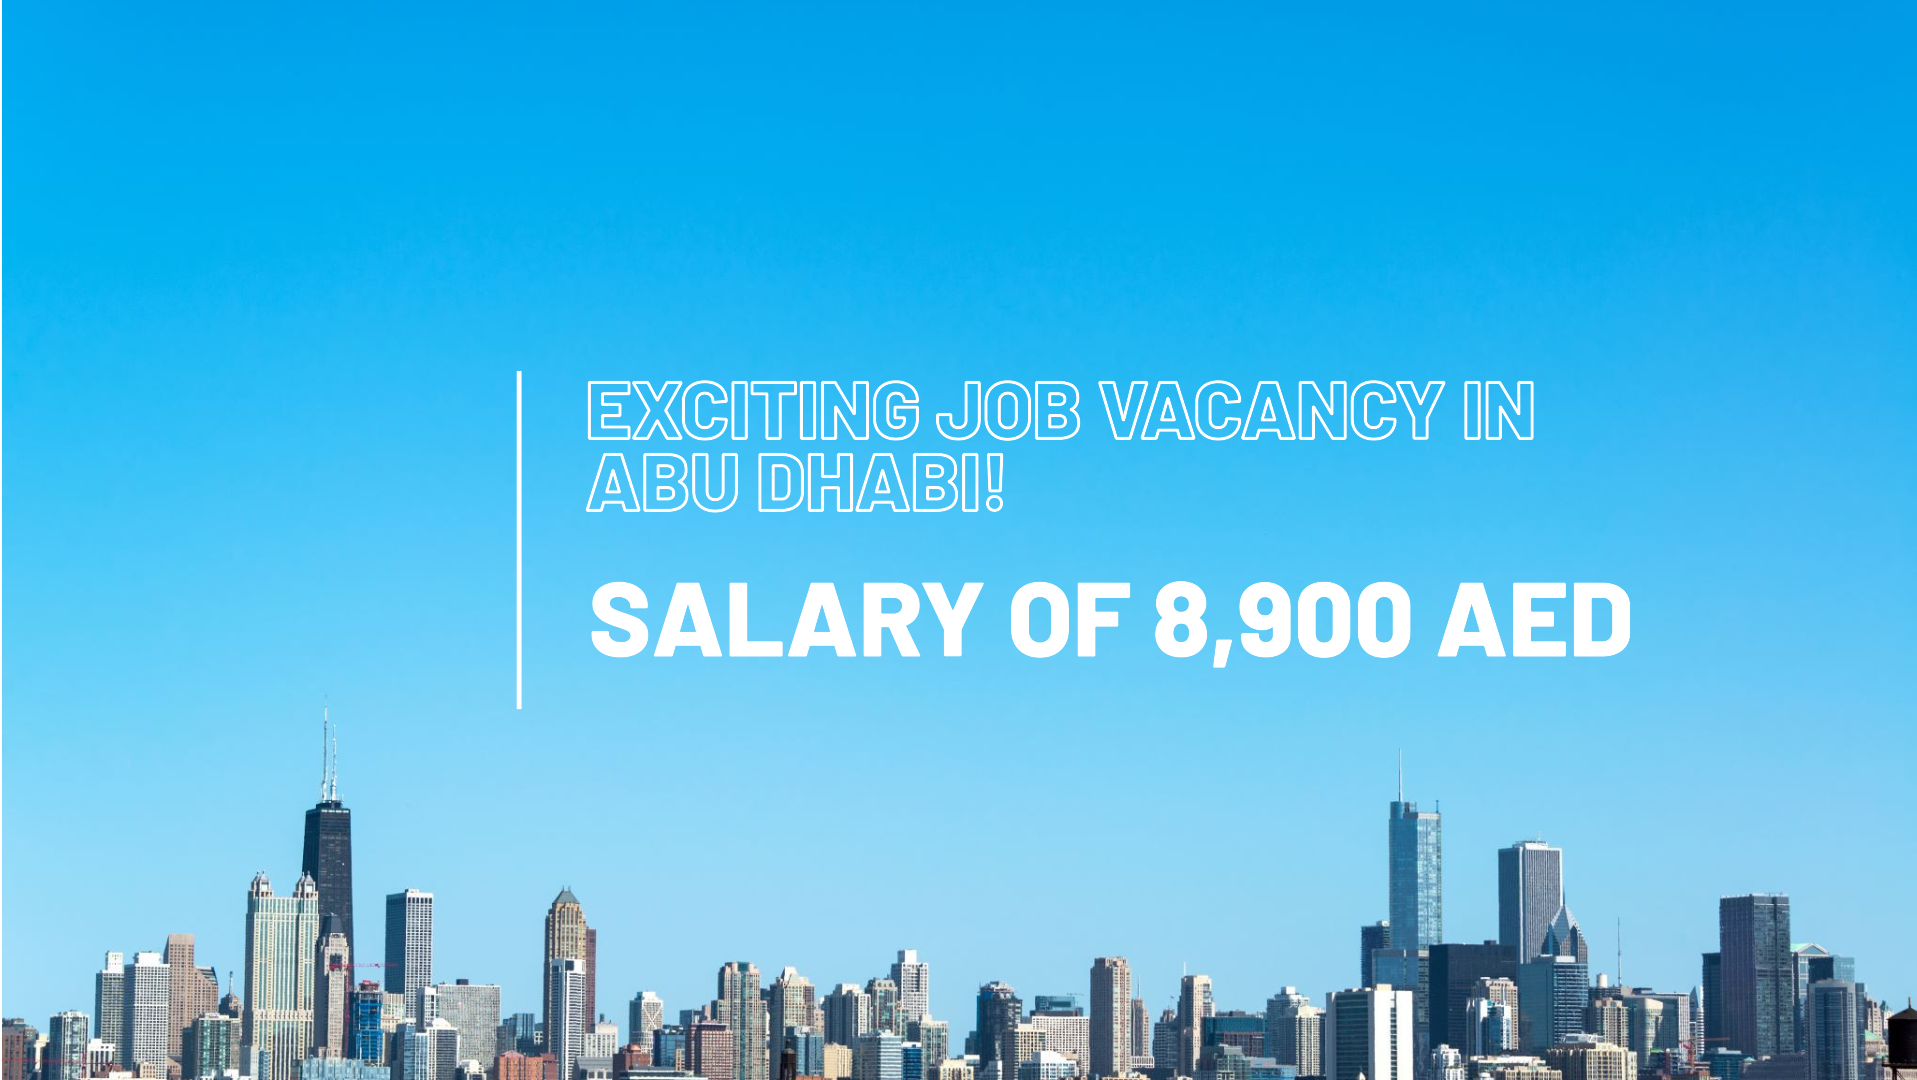 abu dhabi job vacancy with salary 8,900 AED